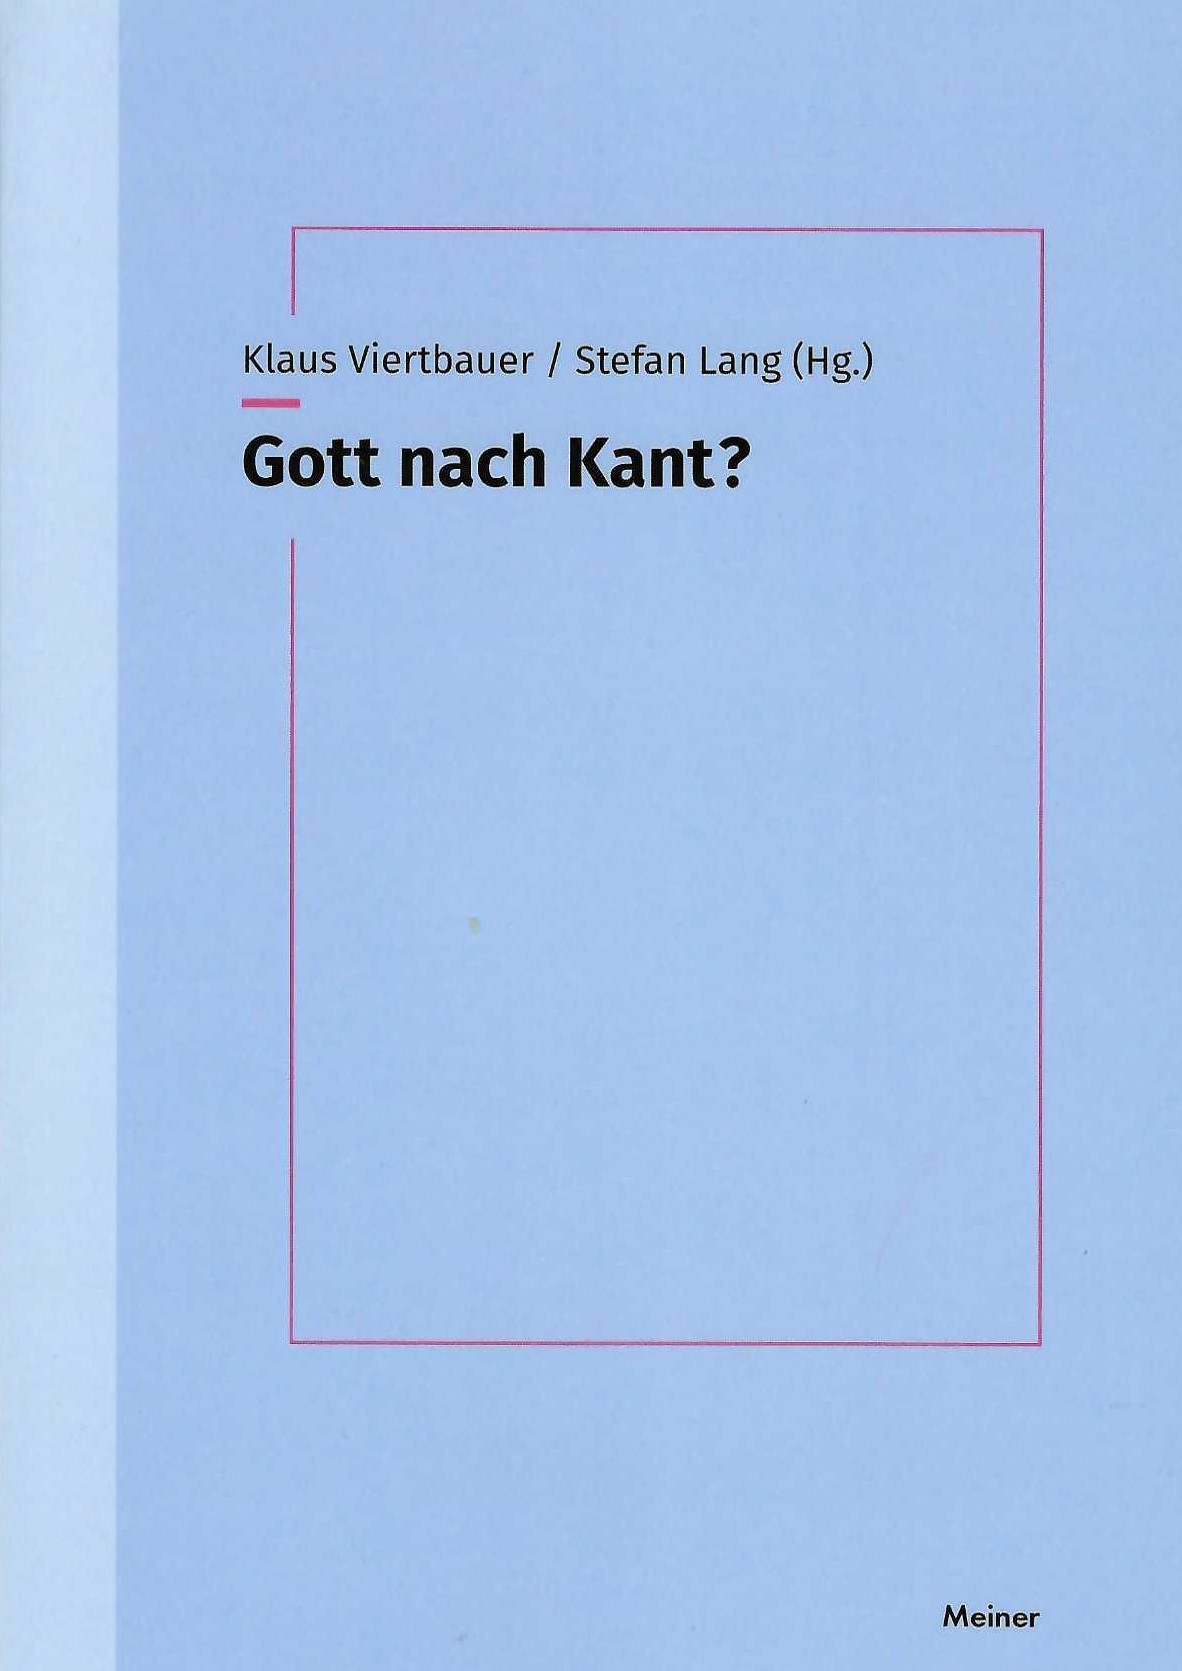 Gott nach Kant cut.jpg